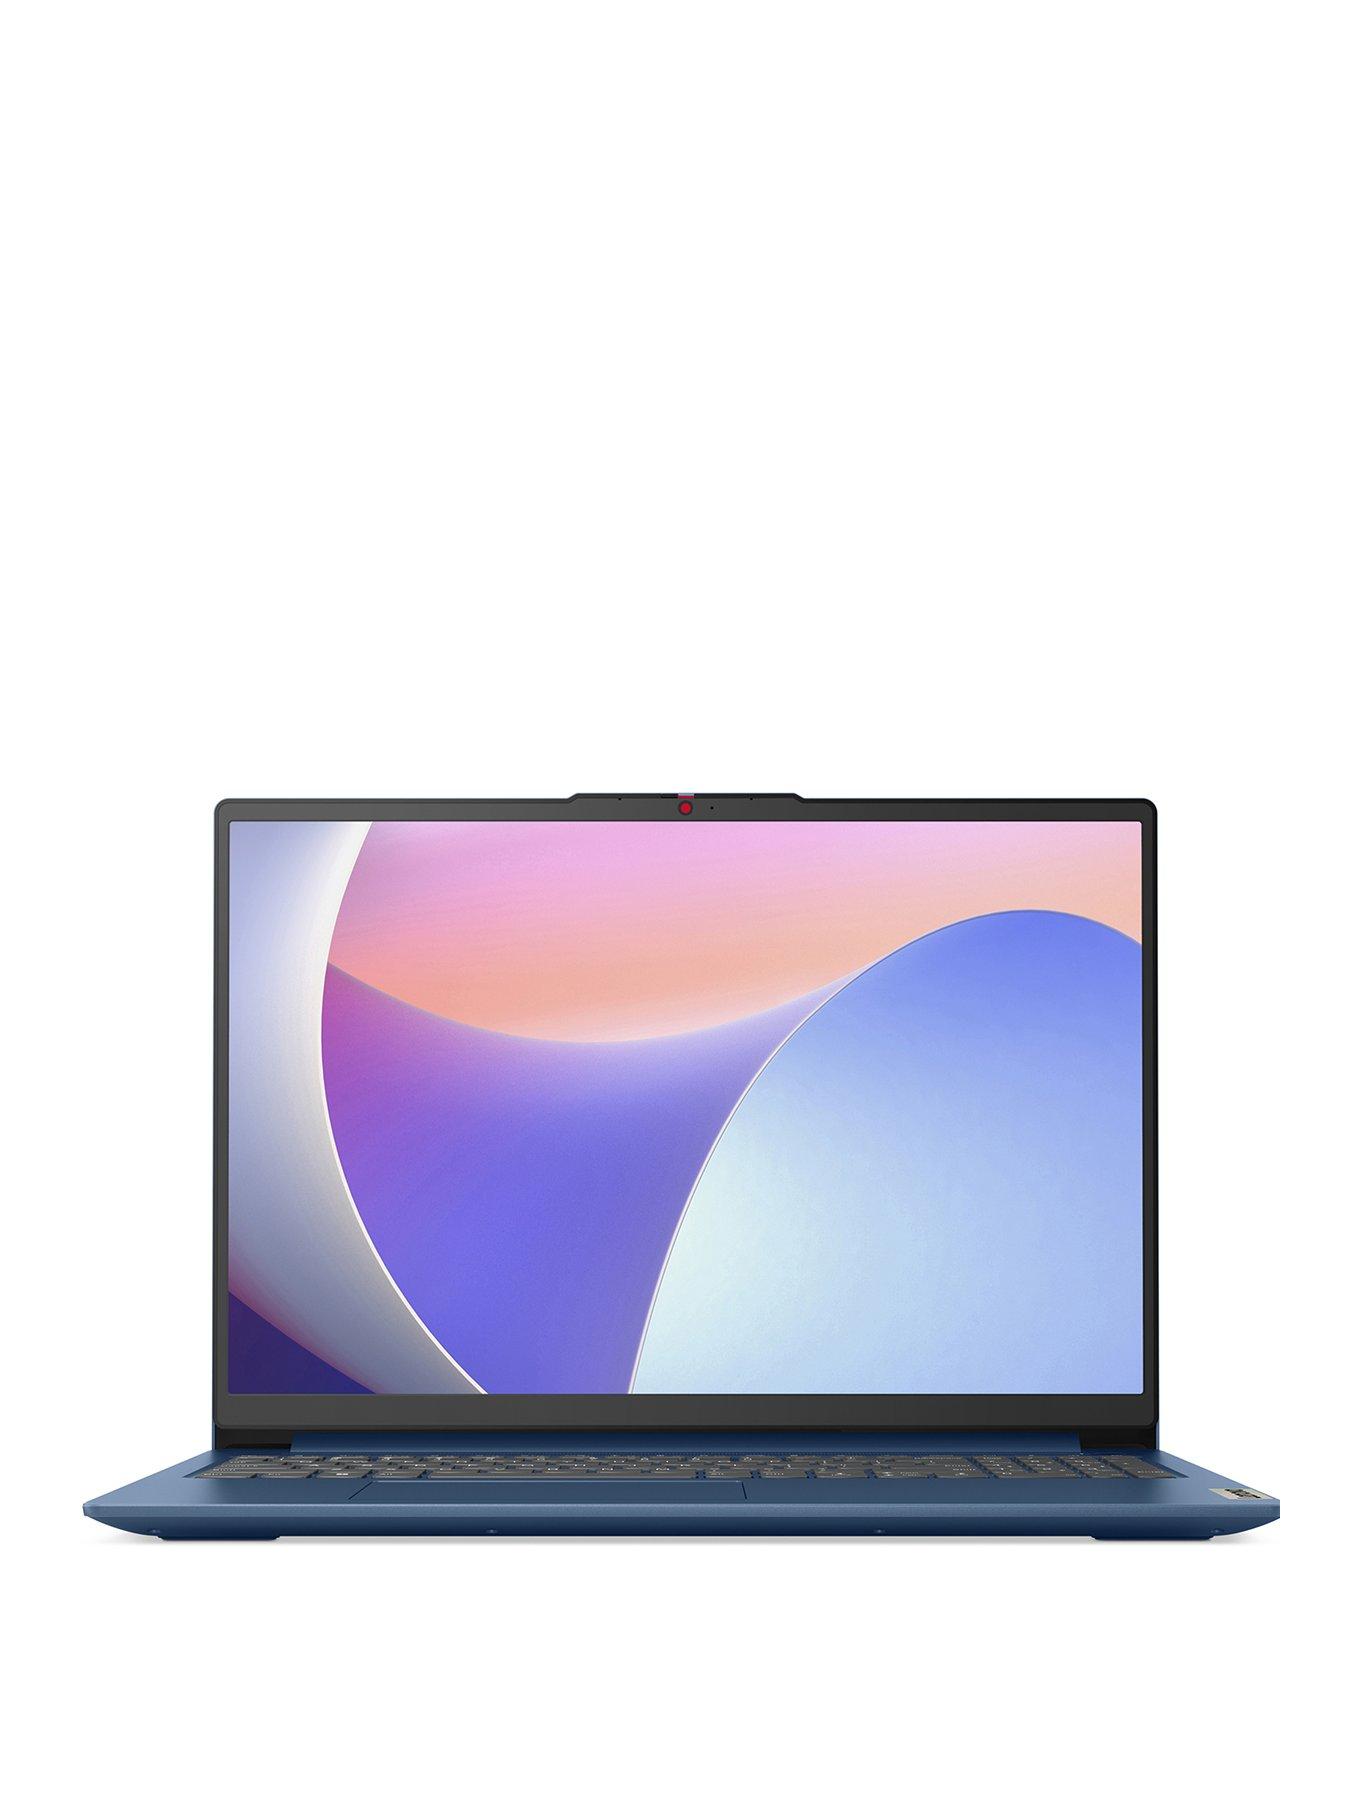 Lenovo Ideapad Slim 3 Laptop - 16In Fhd, Intel U300, 4Gb Ram, 128Gb Ufs - Abyss Blue